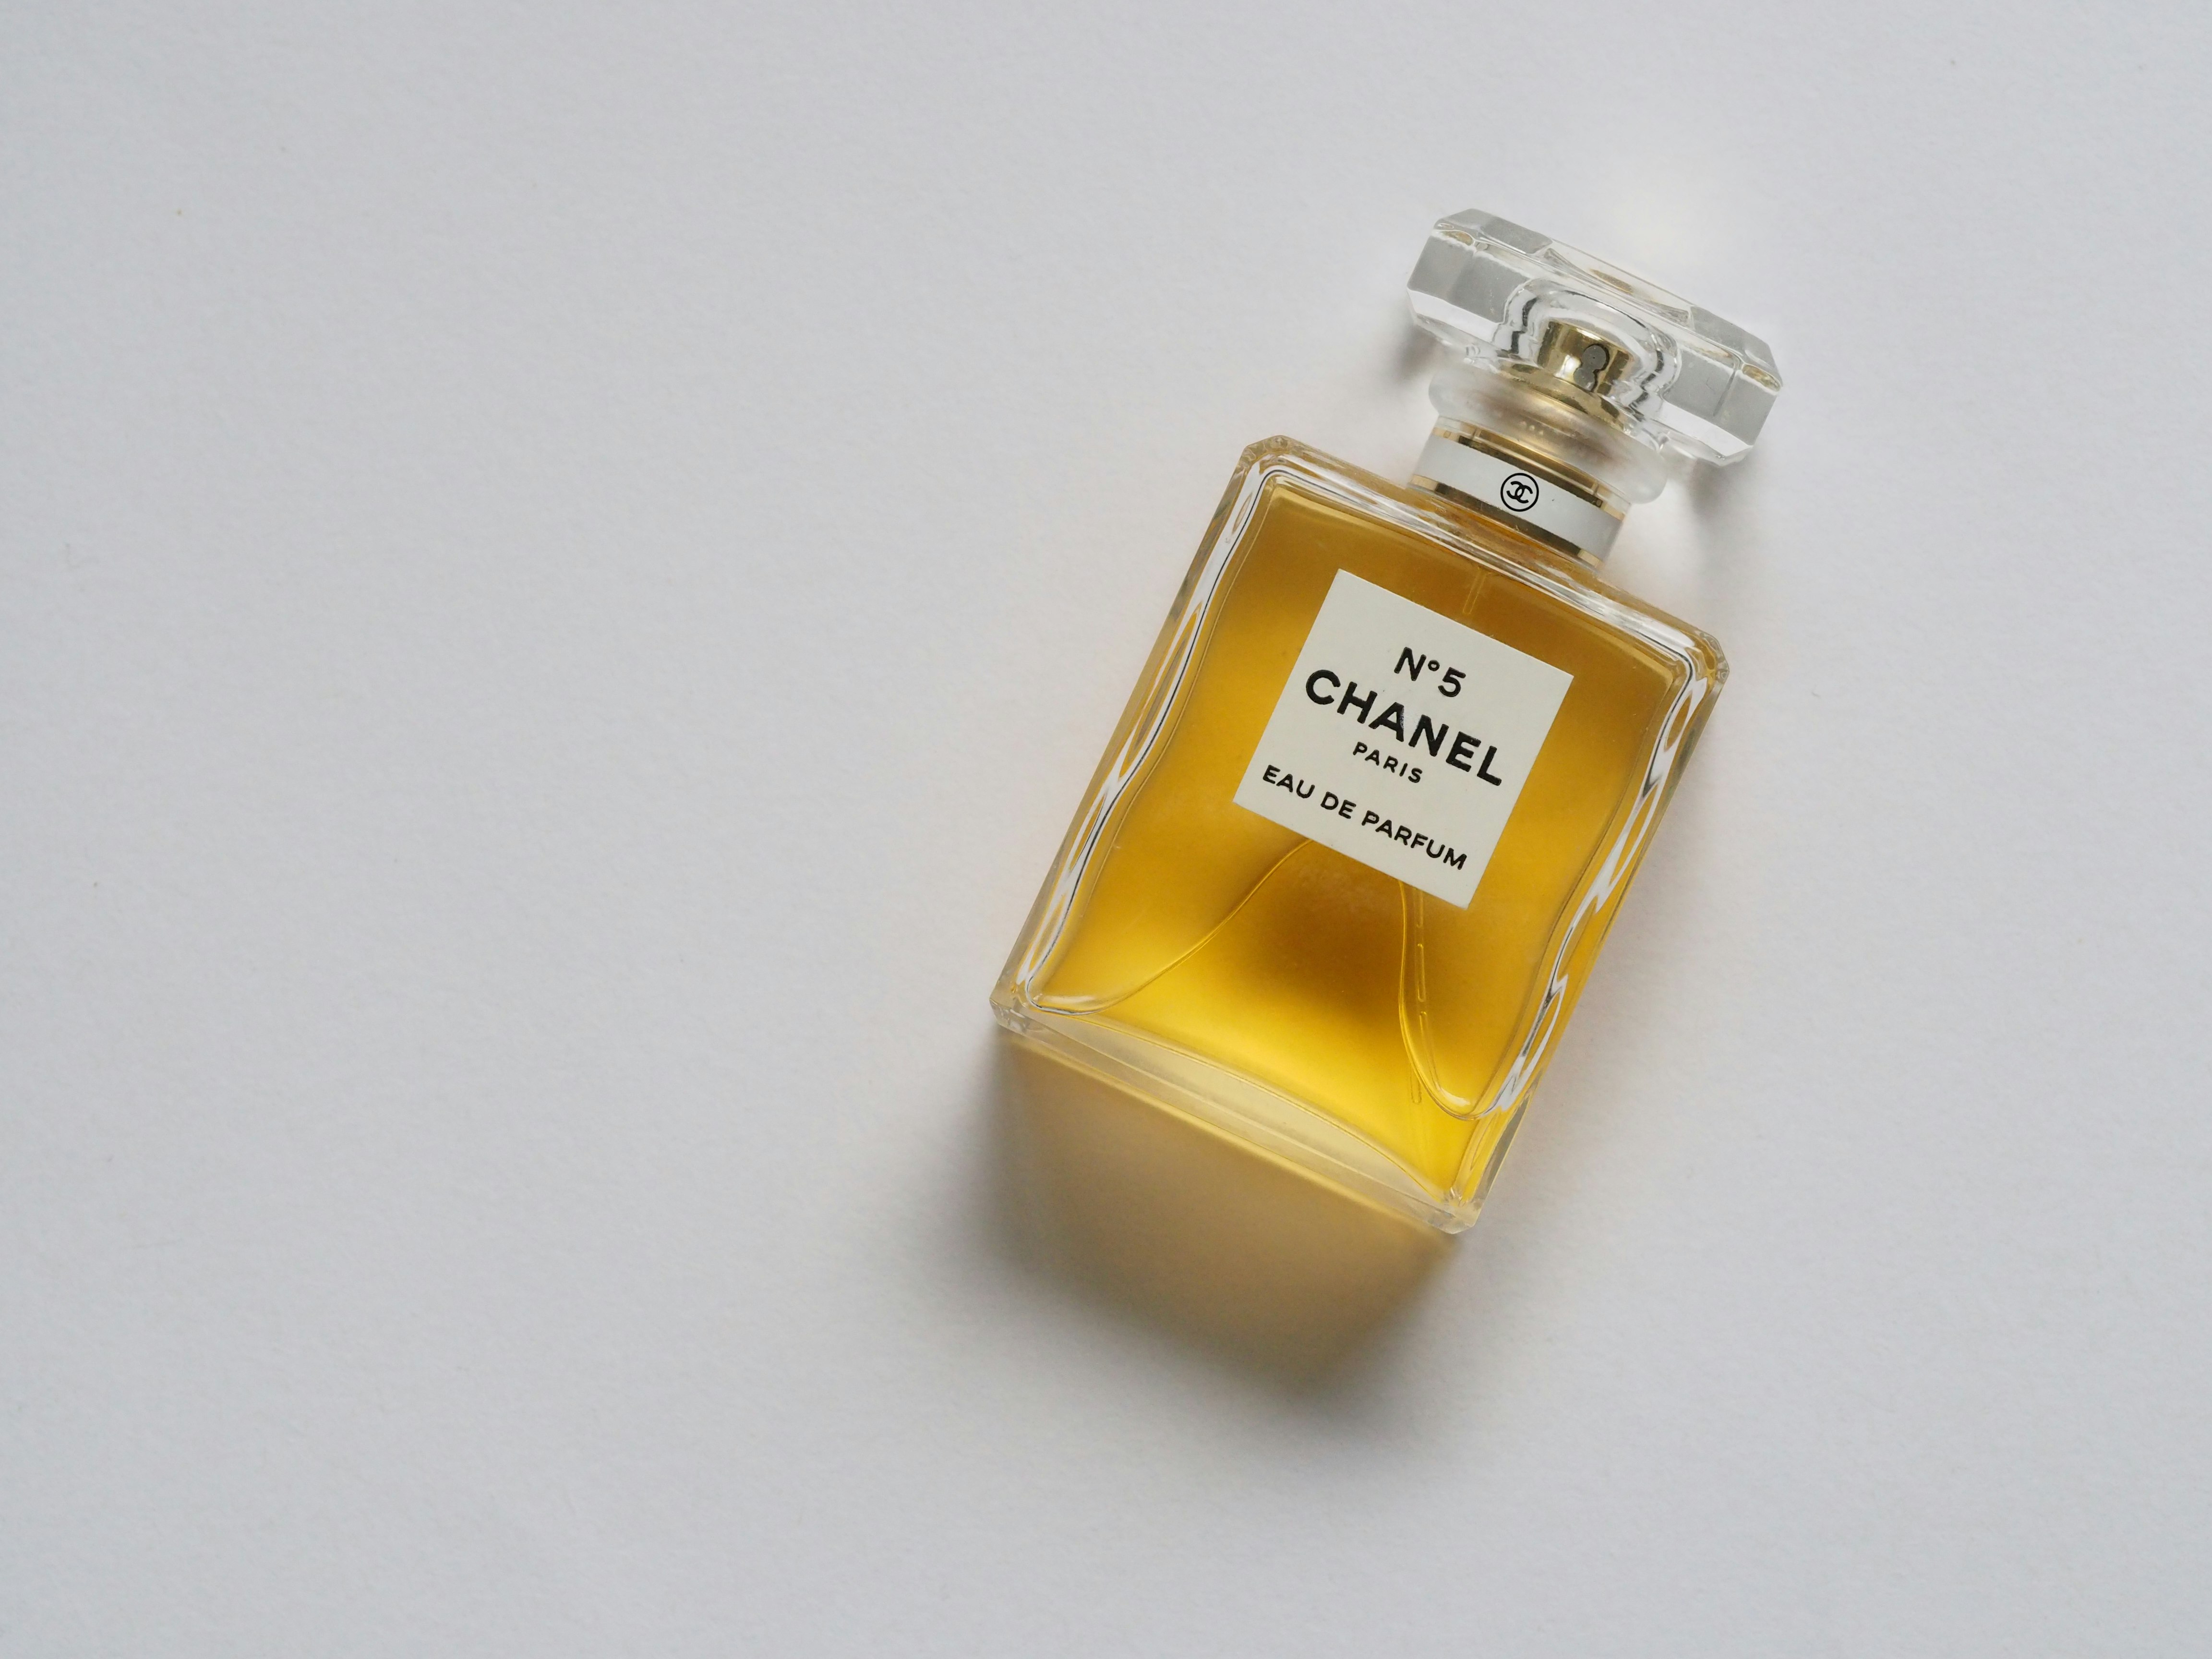 Chanel N5 fragrance bottle